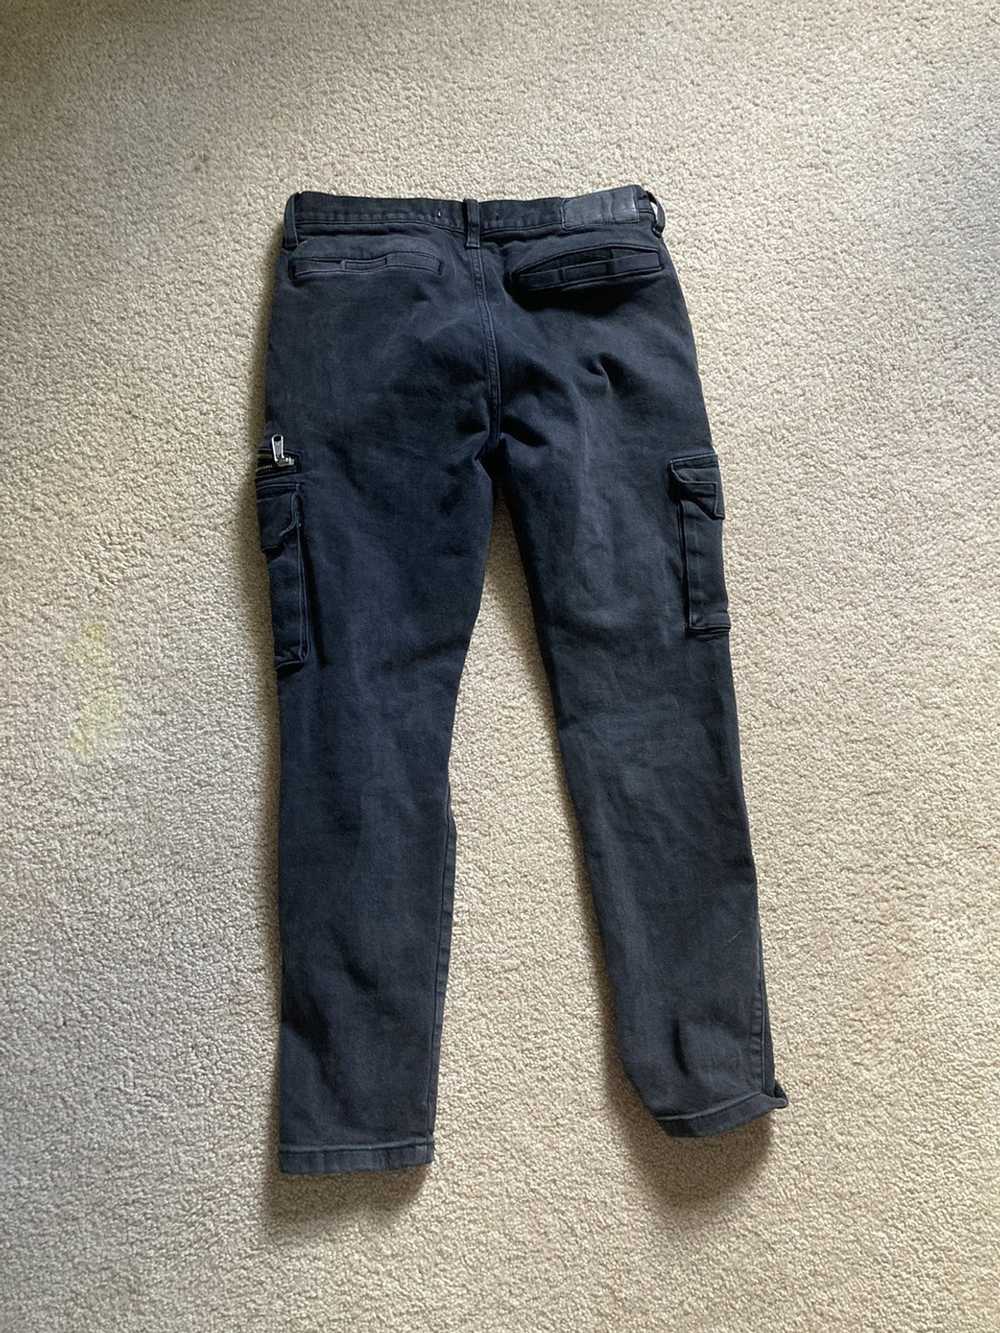 Pacsun × Vintage Black pacsun slim taper jeans - image 7